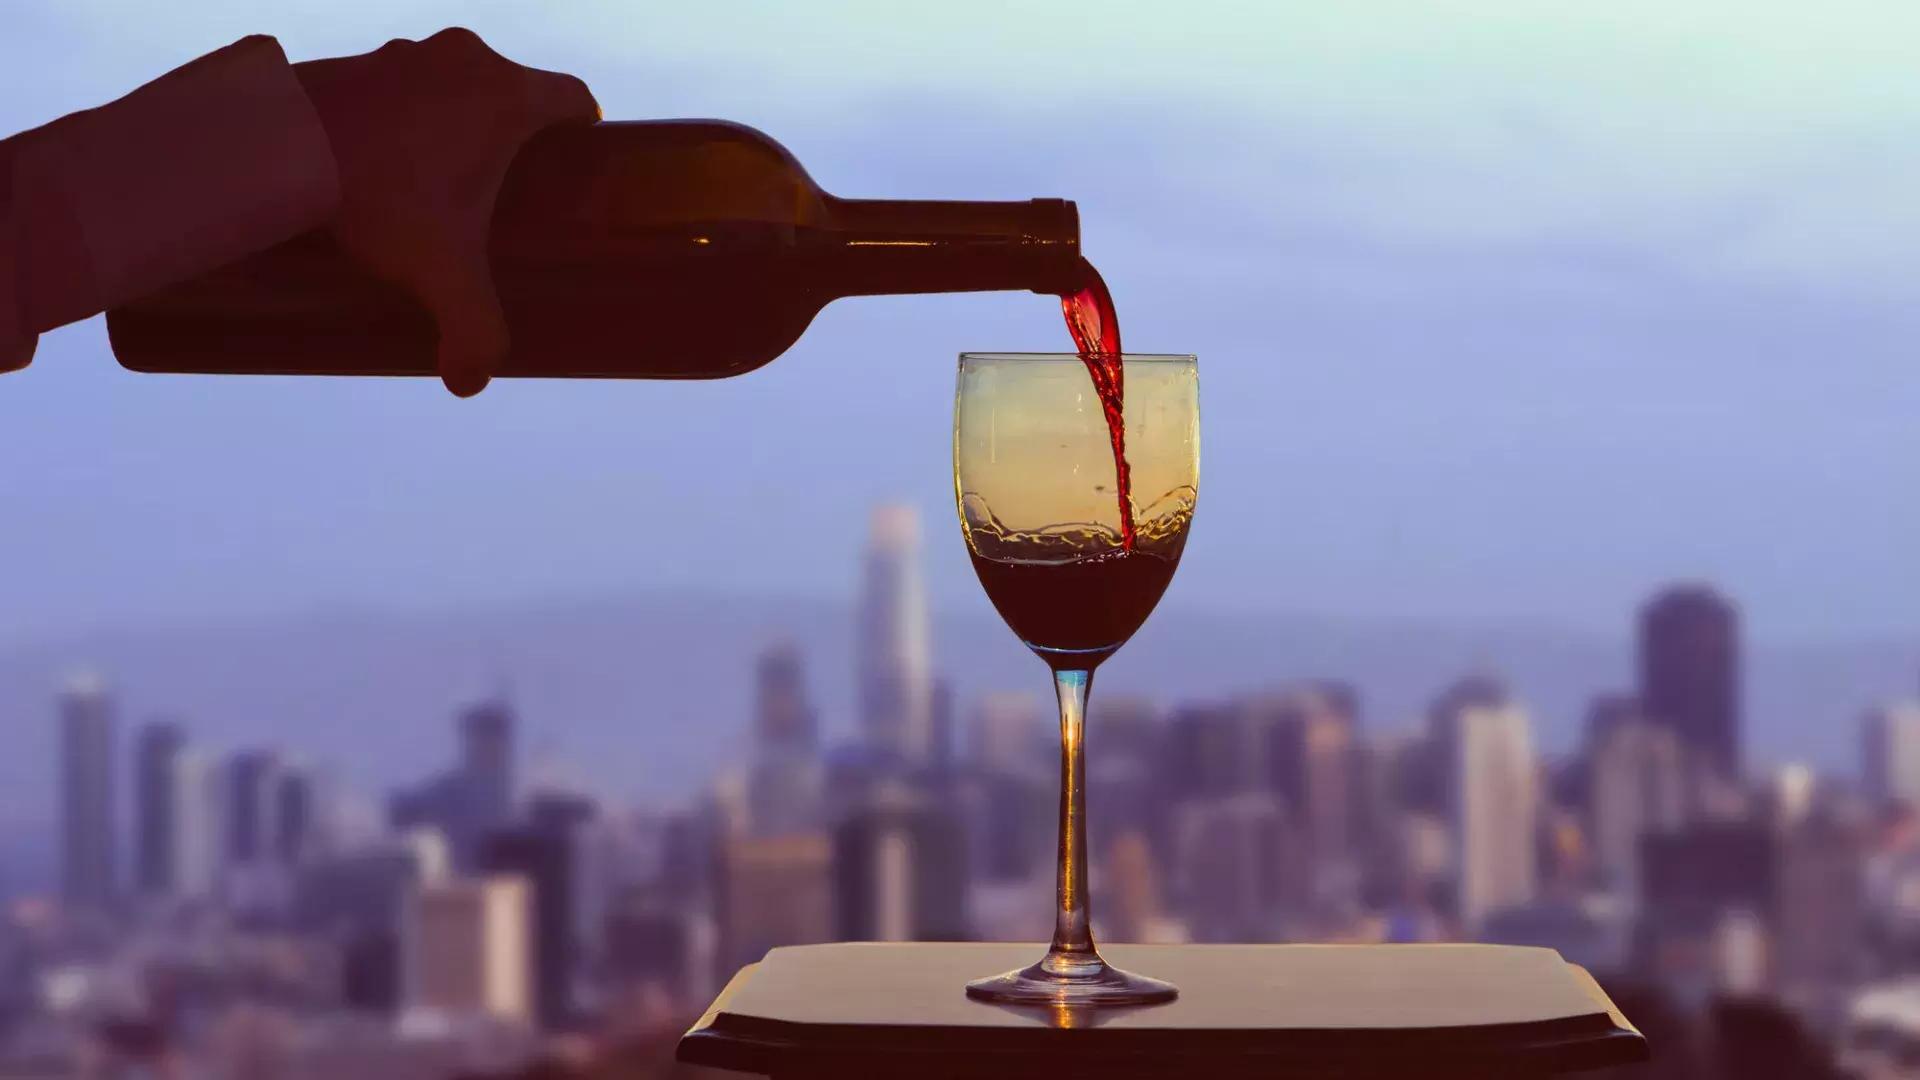 Un bicchiere di vino rosso viene versato, con lo skyline di San Francisco visibile fuori dalla finestra.